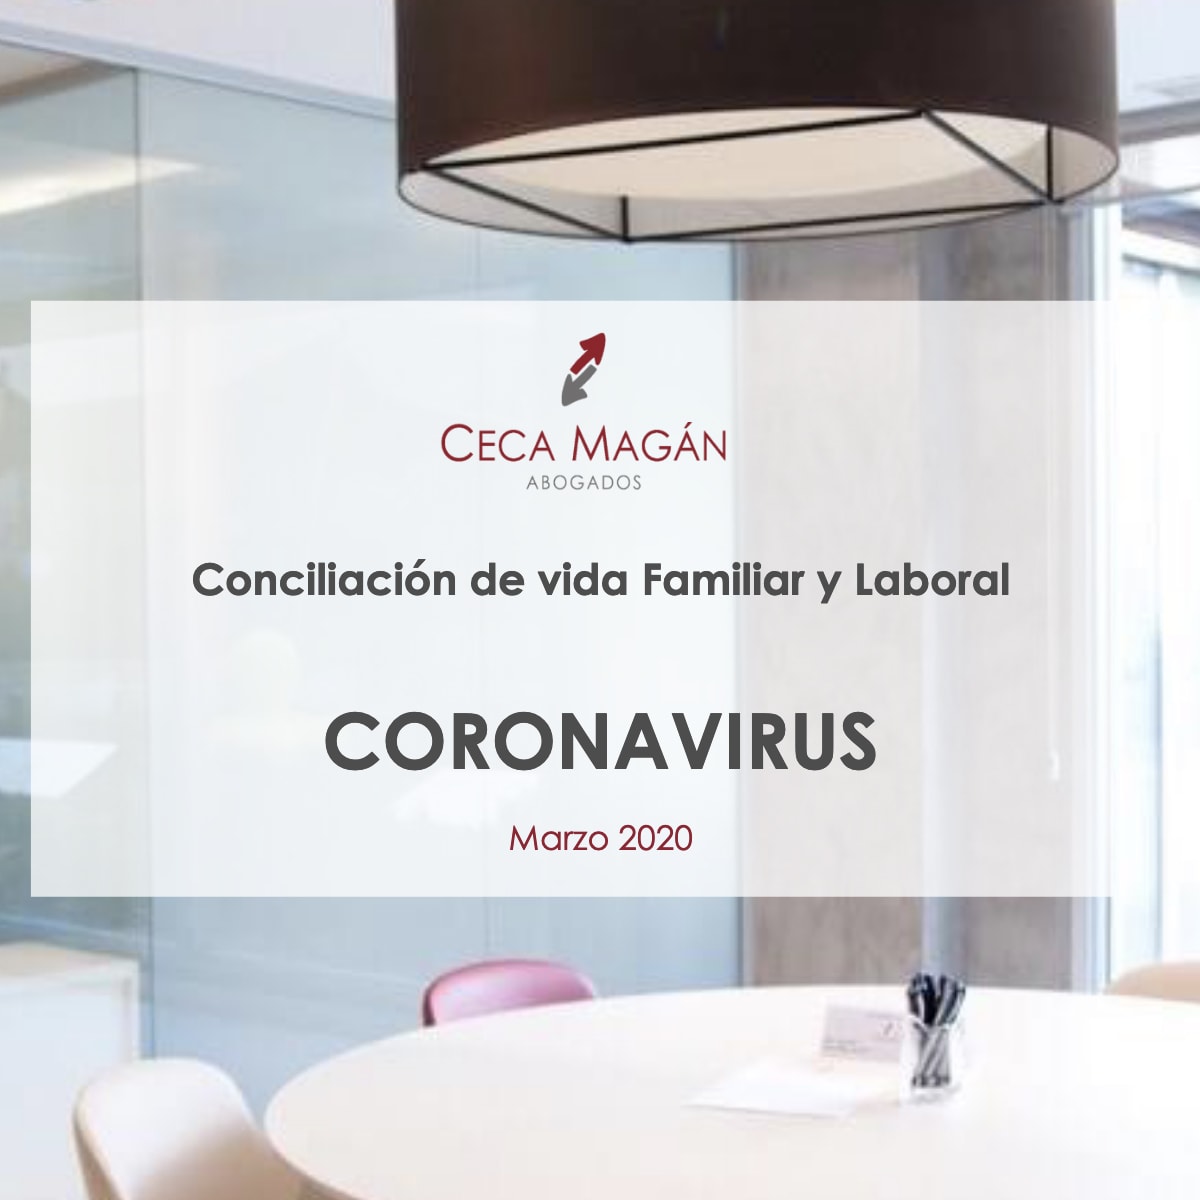 Coronavirus: Conciliación de vida Familiar y Laboral